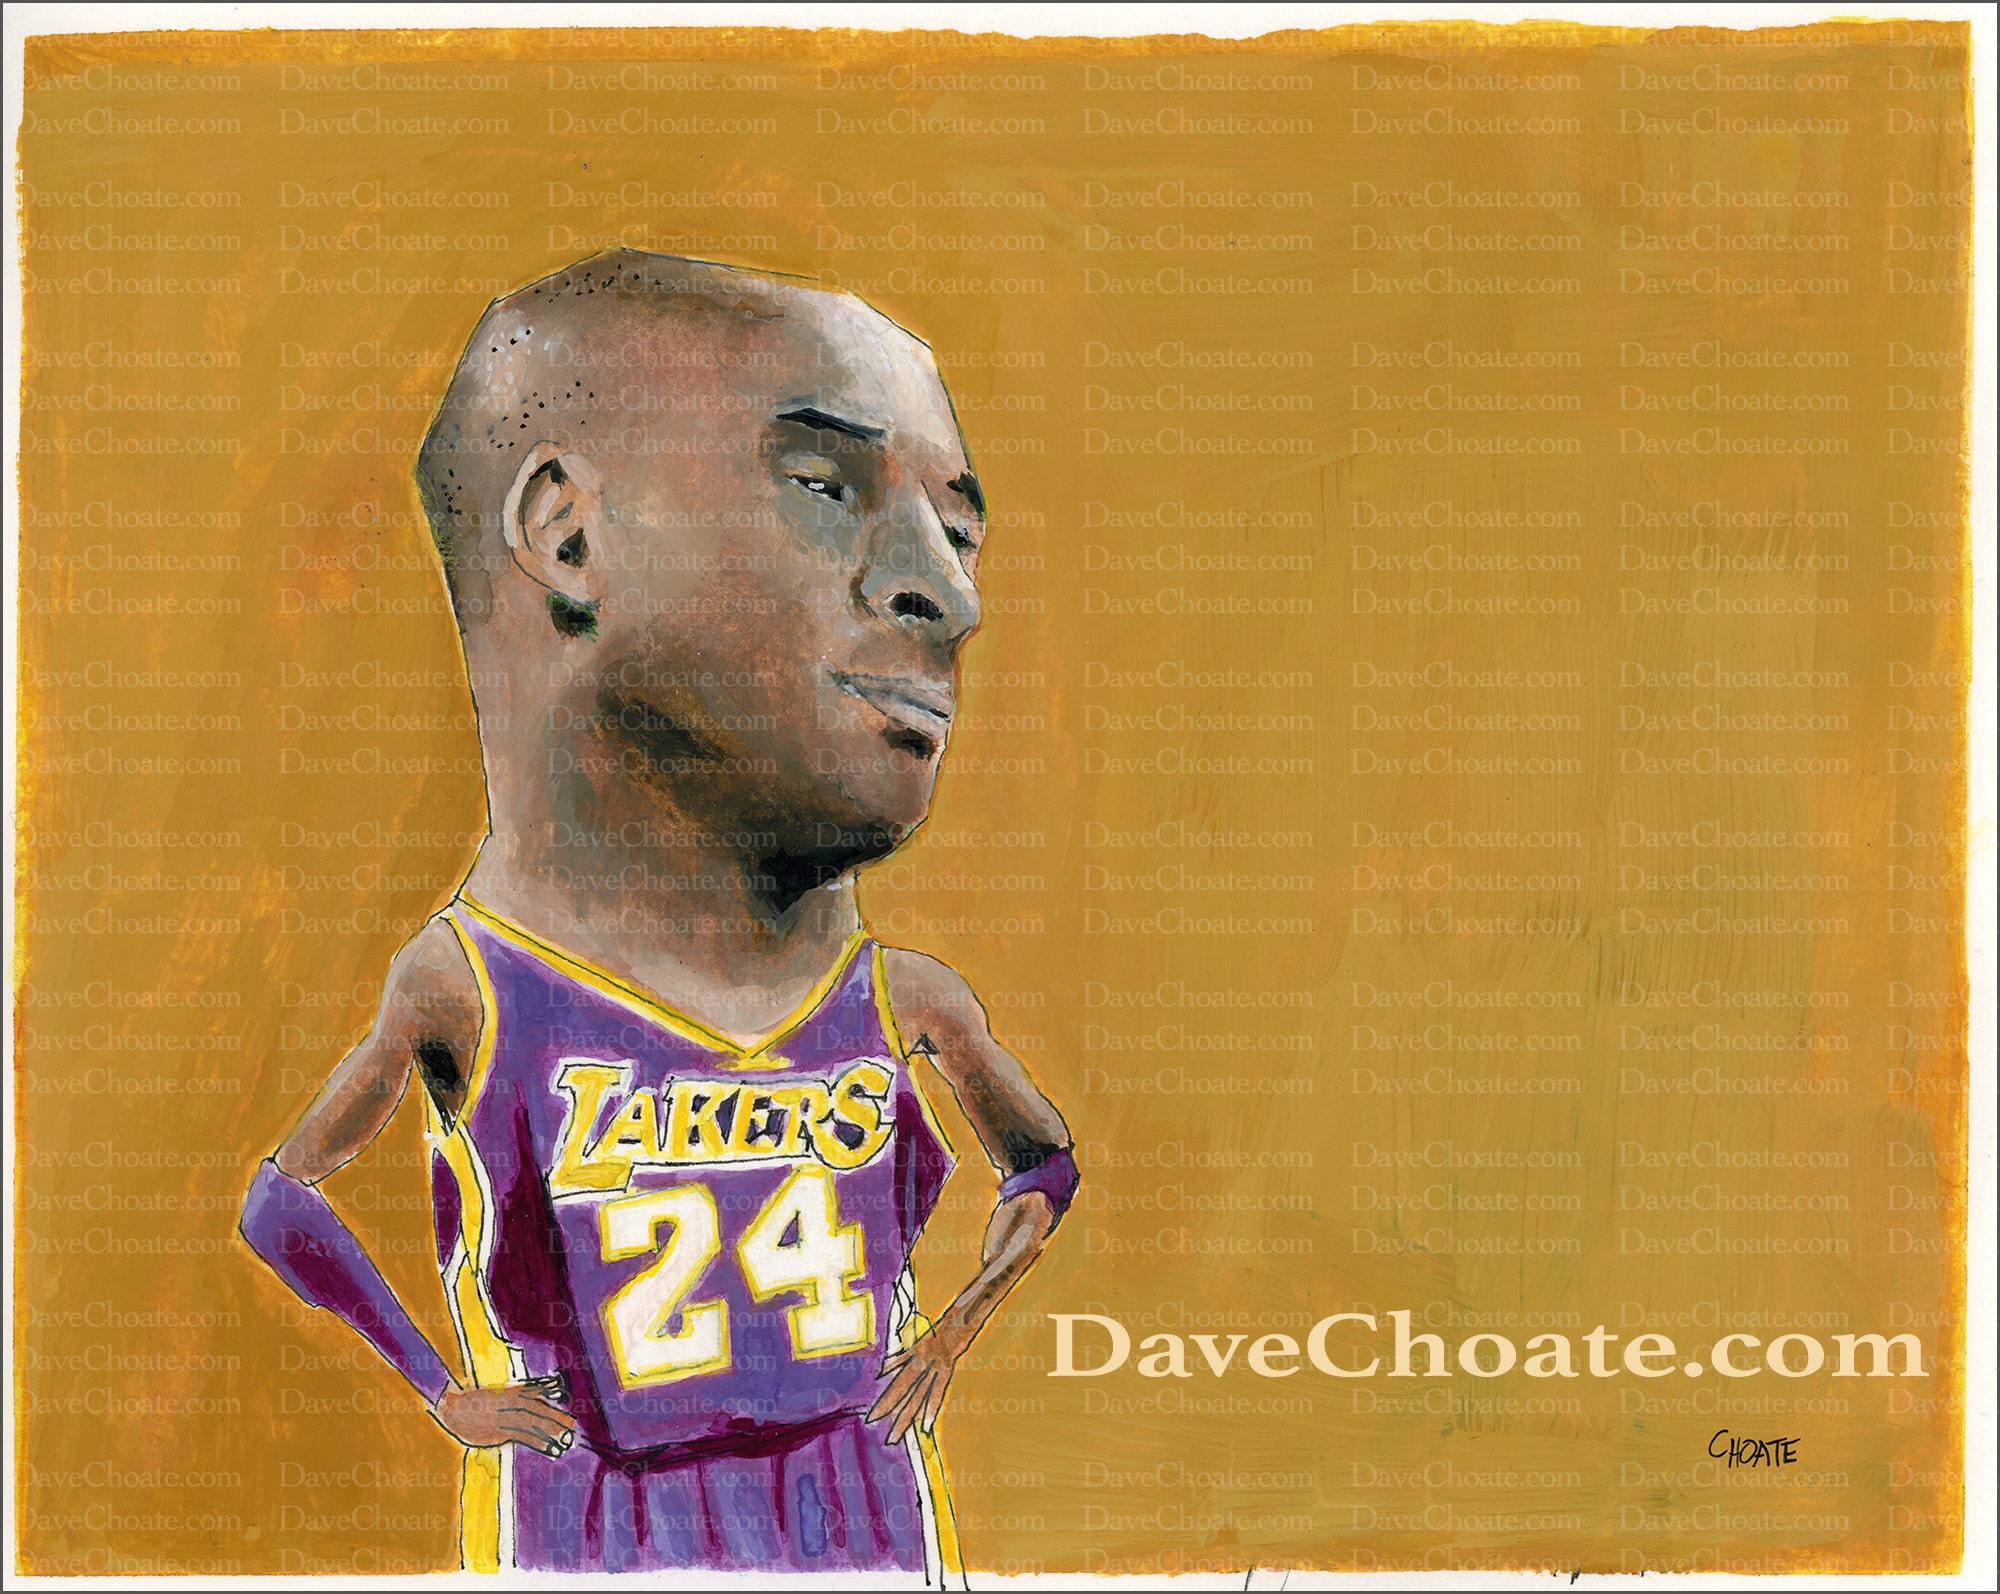 New Never Worn Stitched Lakers Black Mamba Kobe Bryant Jersey